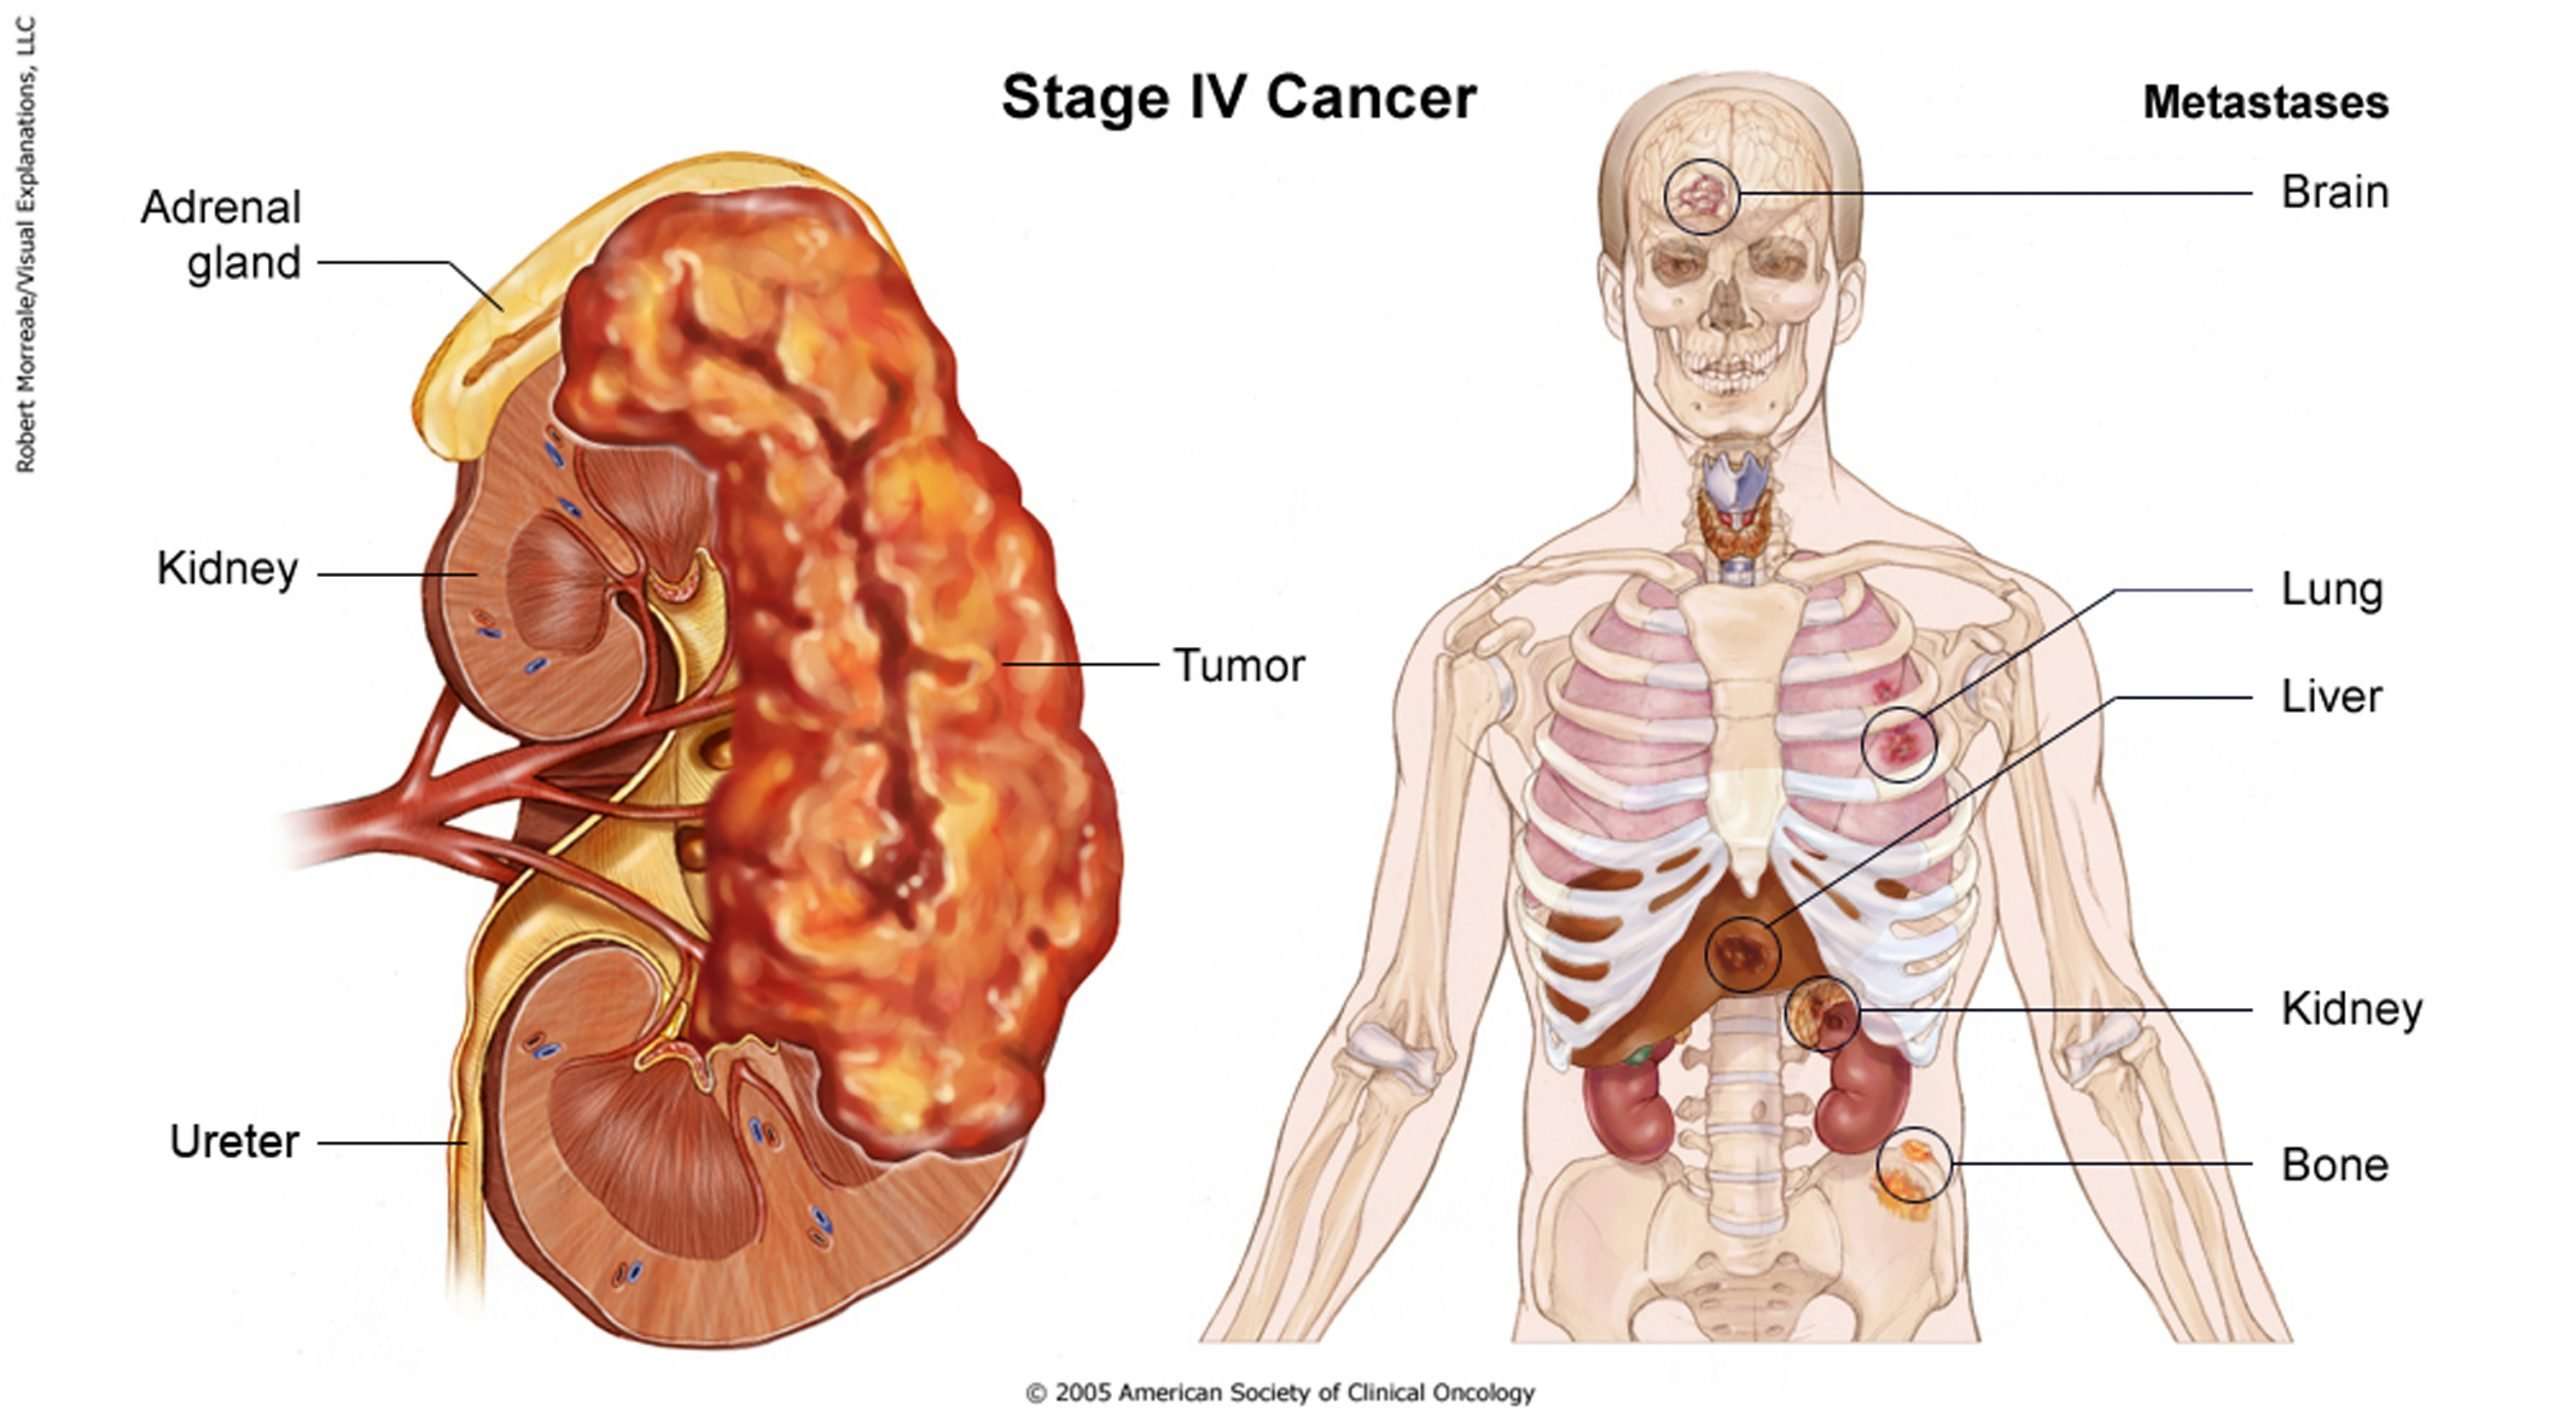 Kidney Cancer (Stage IV)